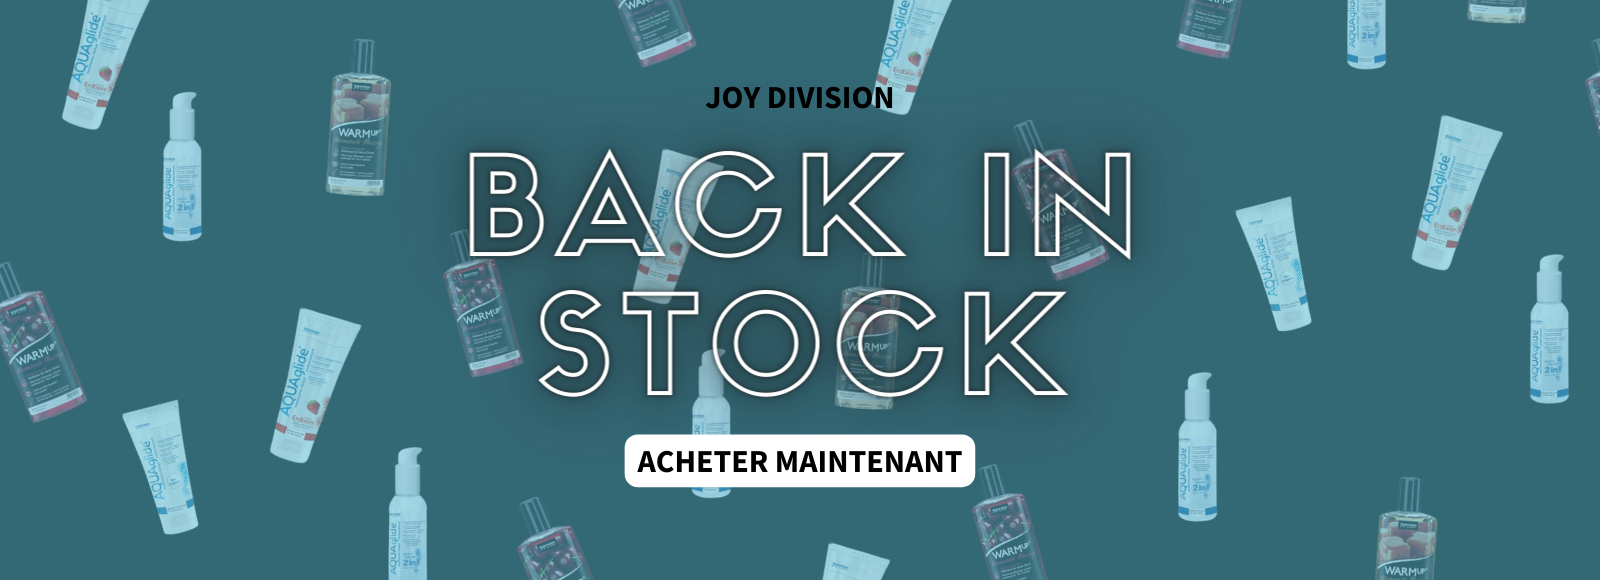 Joy Division Back in Stock